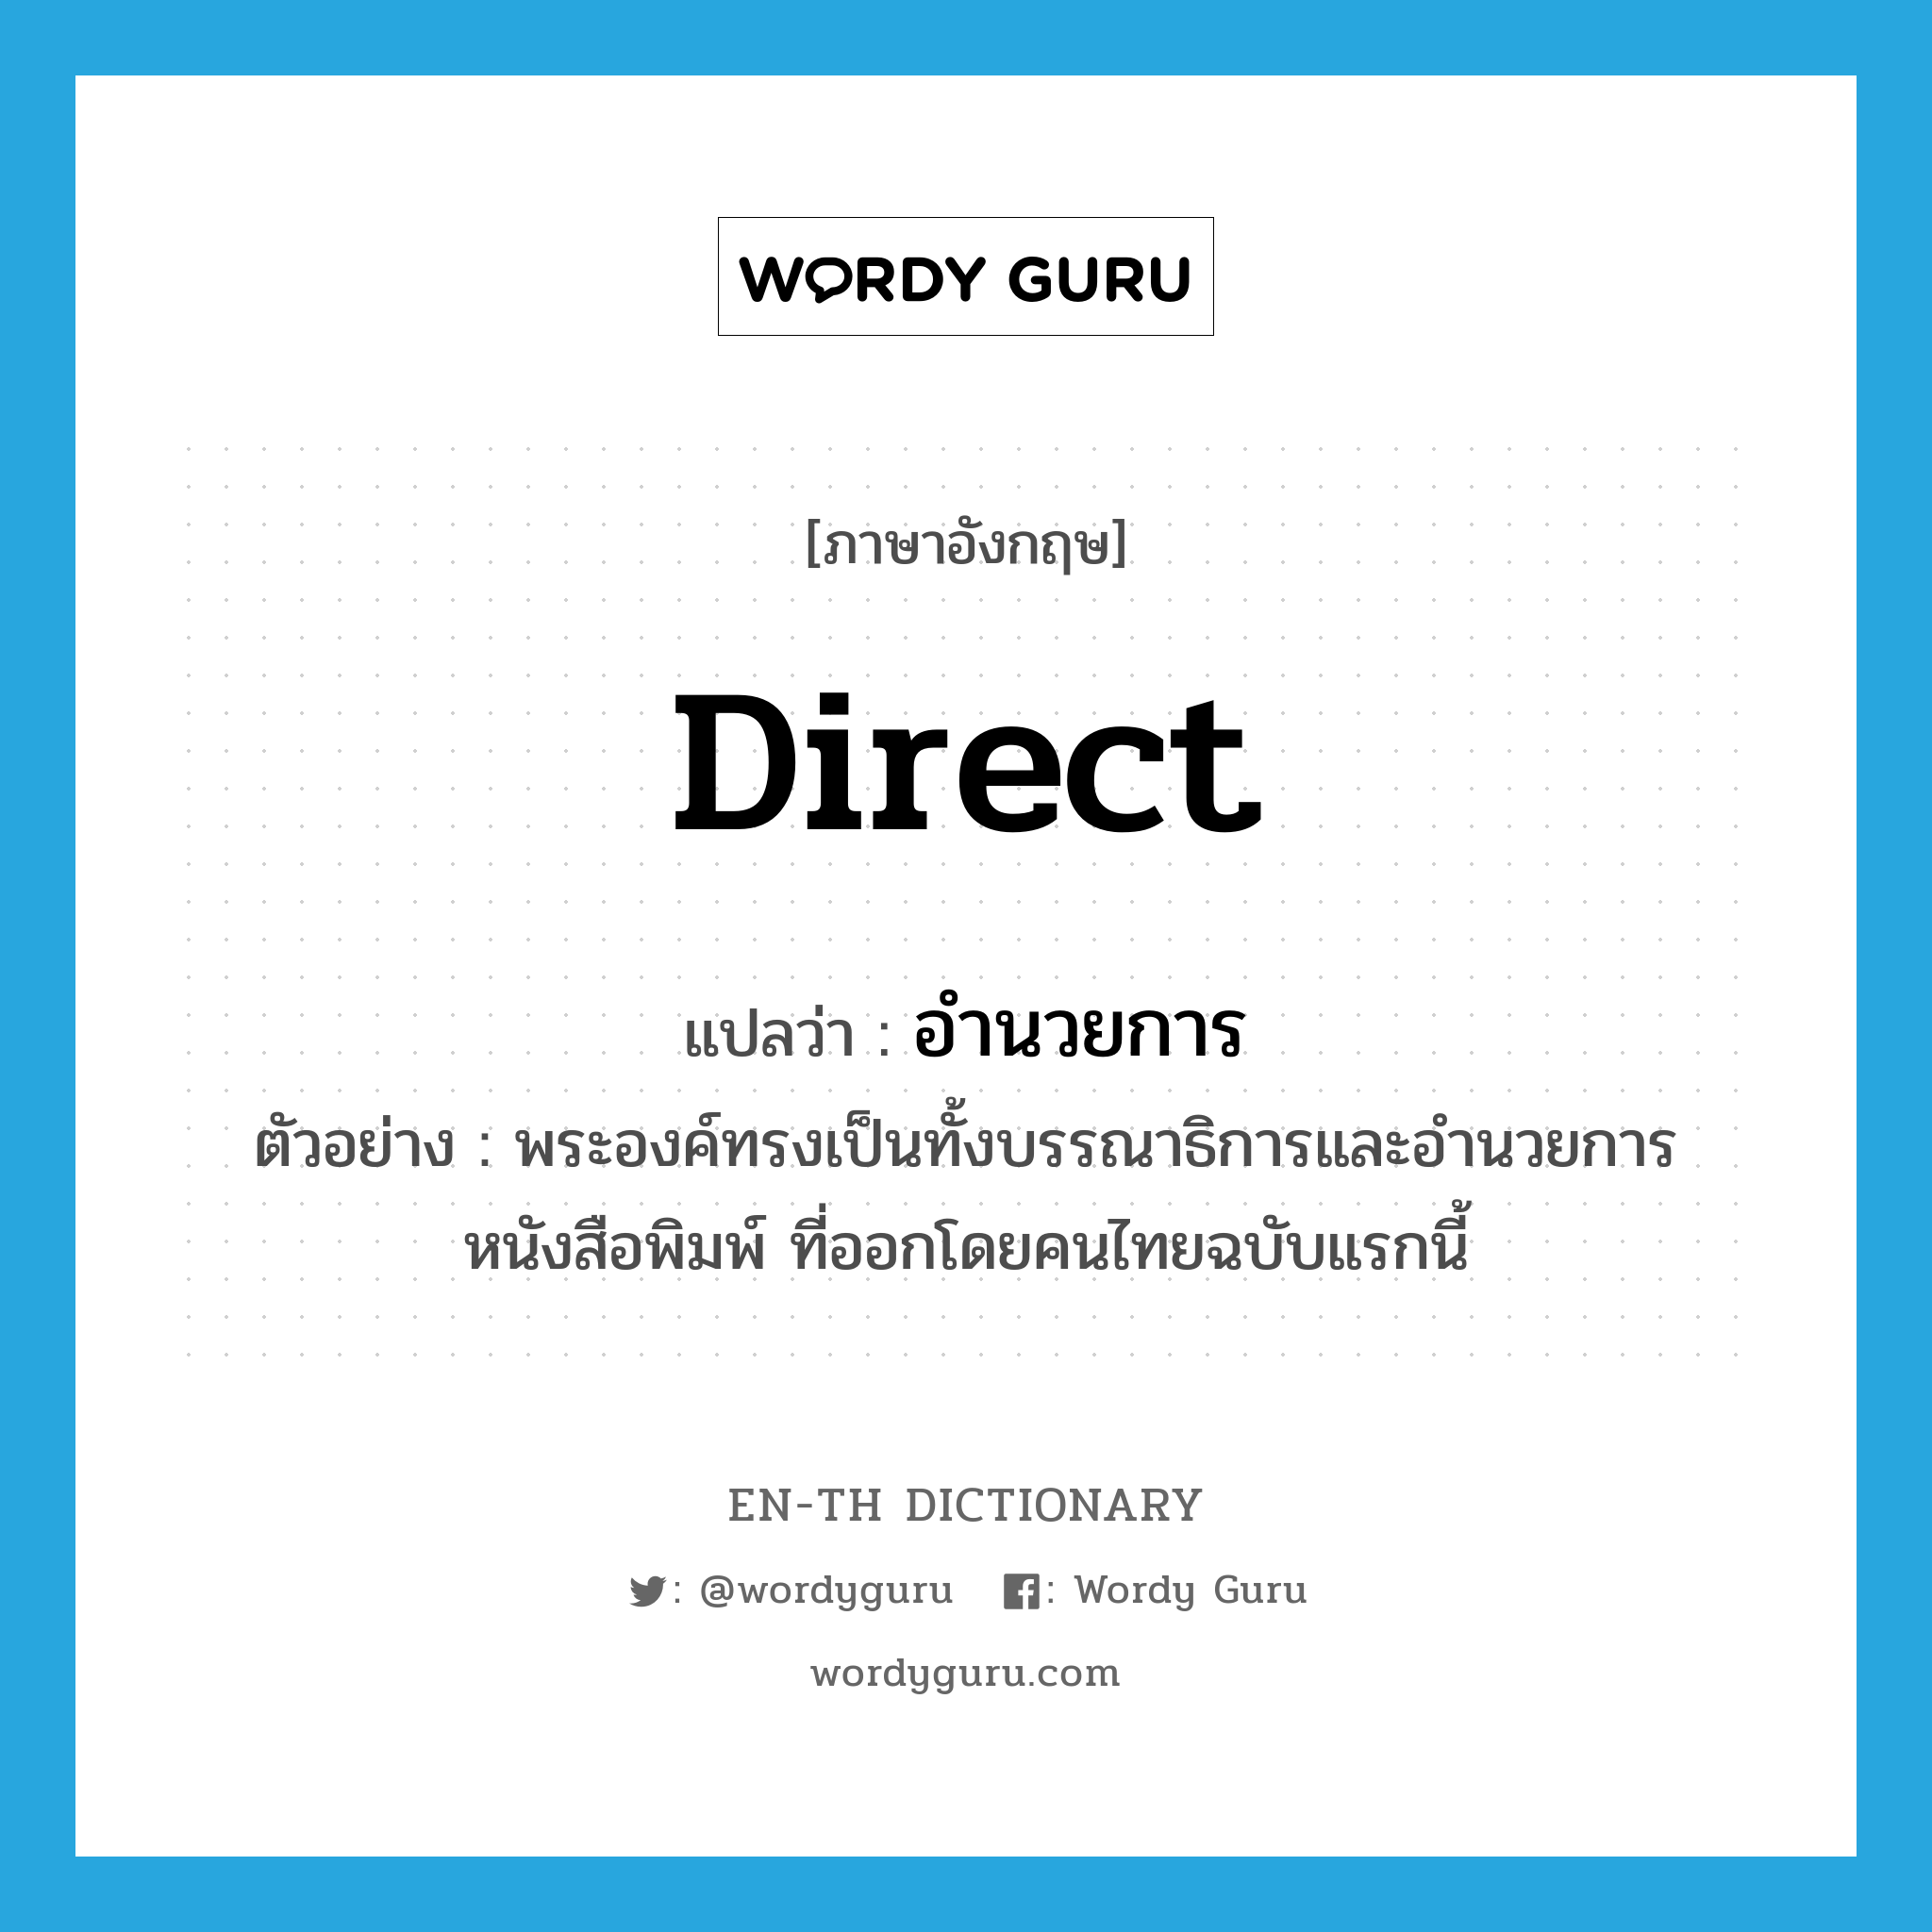 direct แปลว่า?, คำศัพท์ภาษาอังกฤษ direct แปลว่า อำนวยการ ประเภท V ตัวอย่าง พระองค์ทรงเป็นทั้งบรรณาธิการและอำนวยการหนังสือพิมพ์ ที่ออกโดยคนไทยฉบับแรกนี้ หมวด V